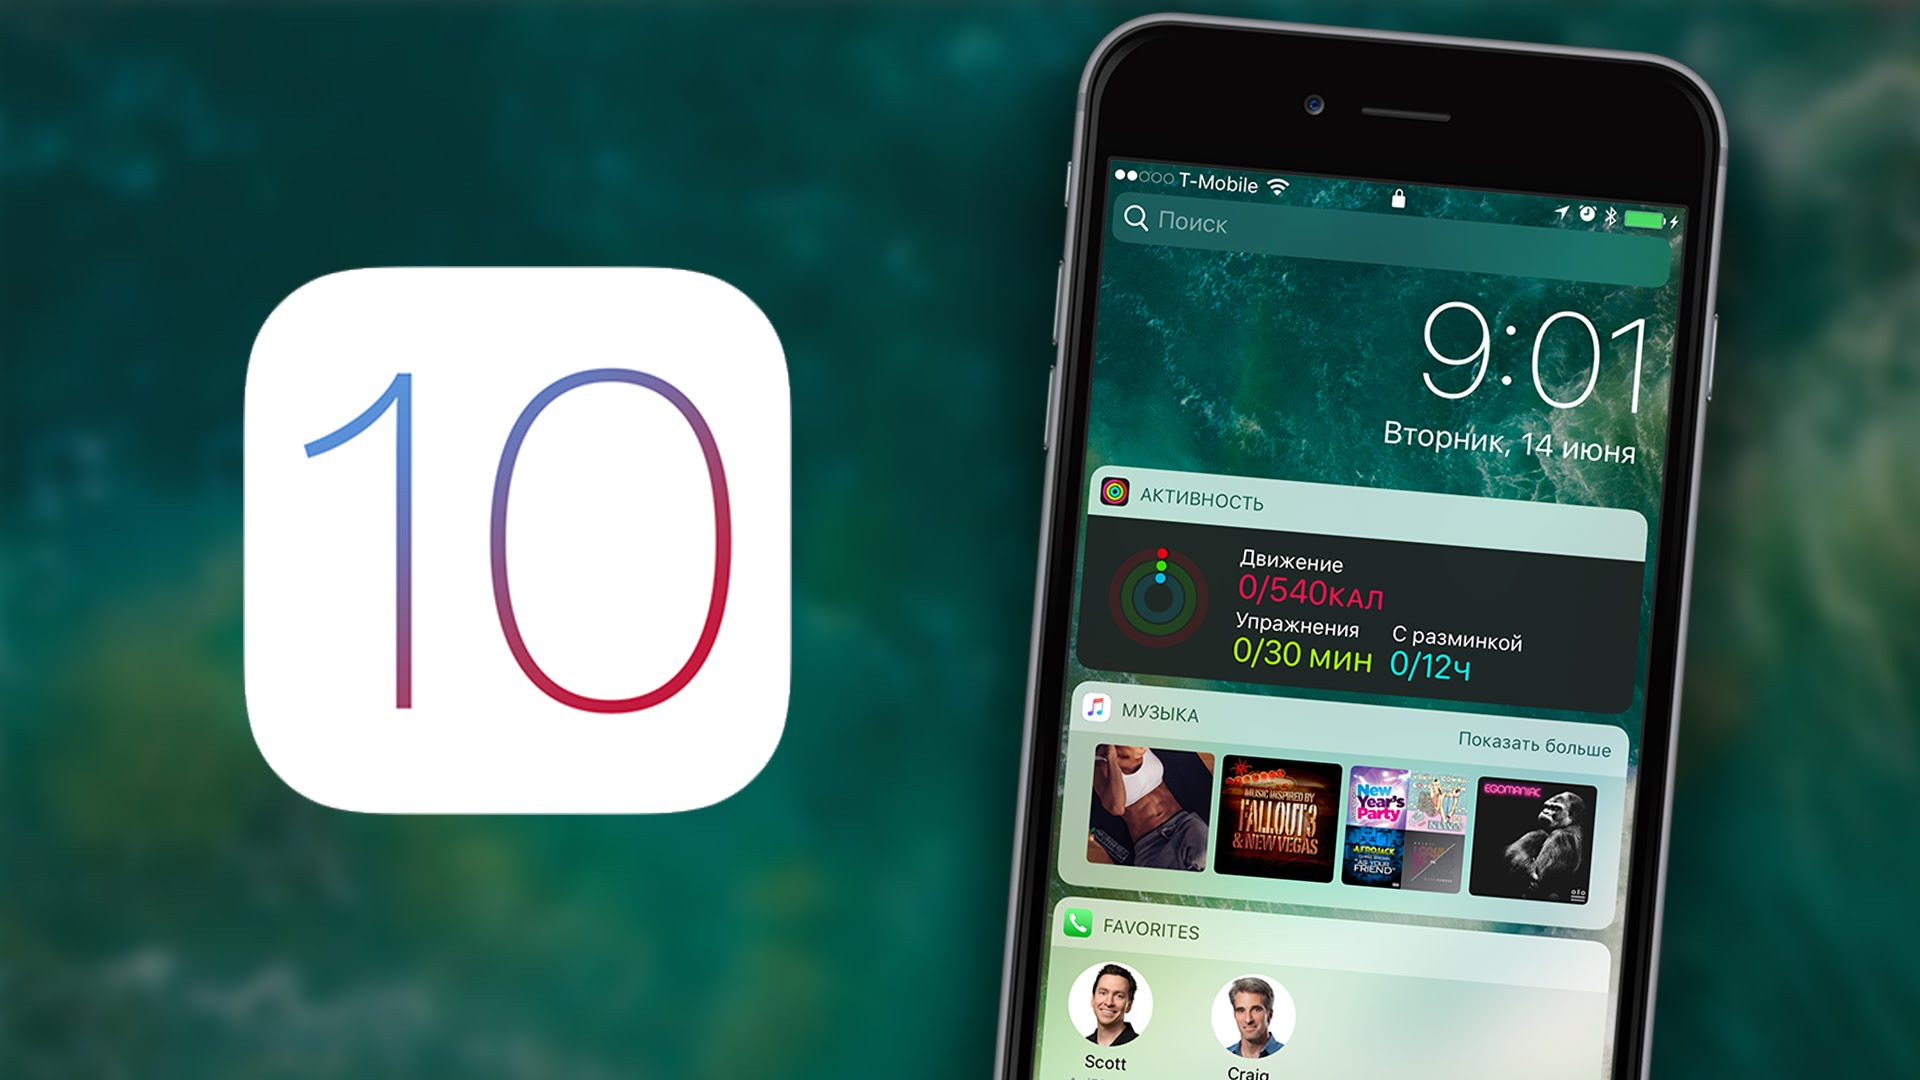 Phiên bản mới iOS 10 được ra mắt được đánh giá đã bao trùm tất cả các bản cập nhật trước đó về tính năng